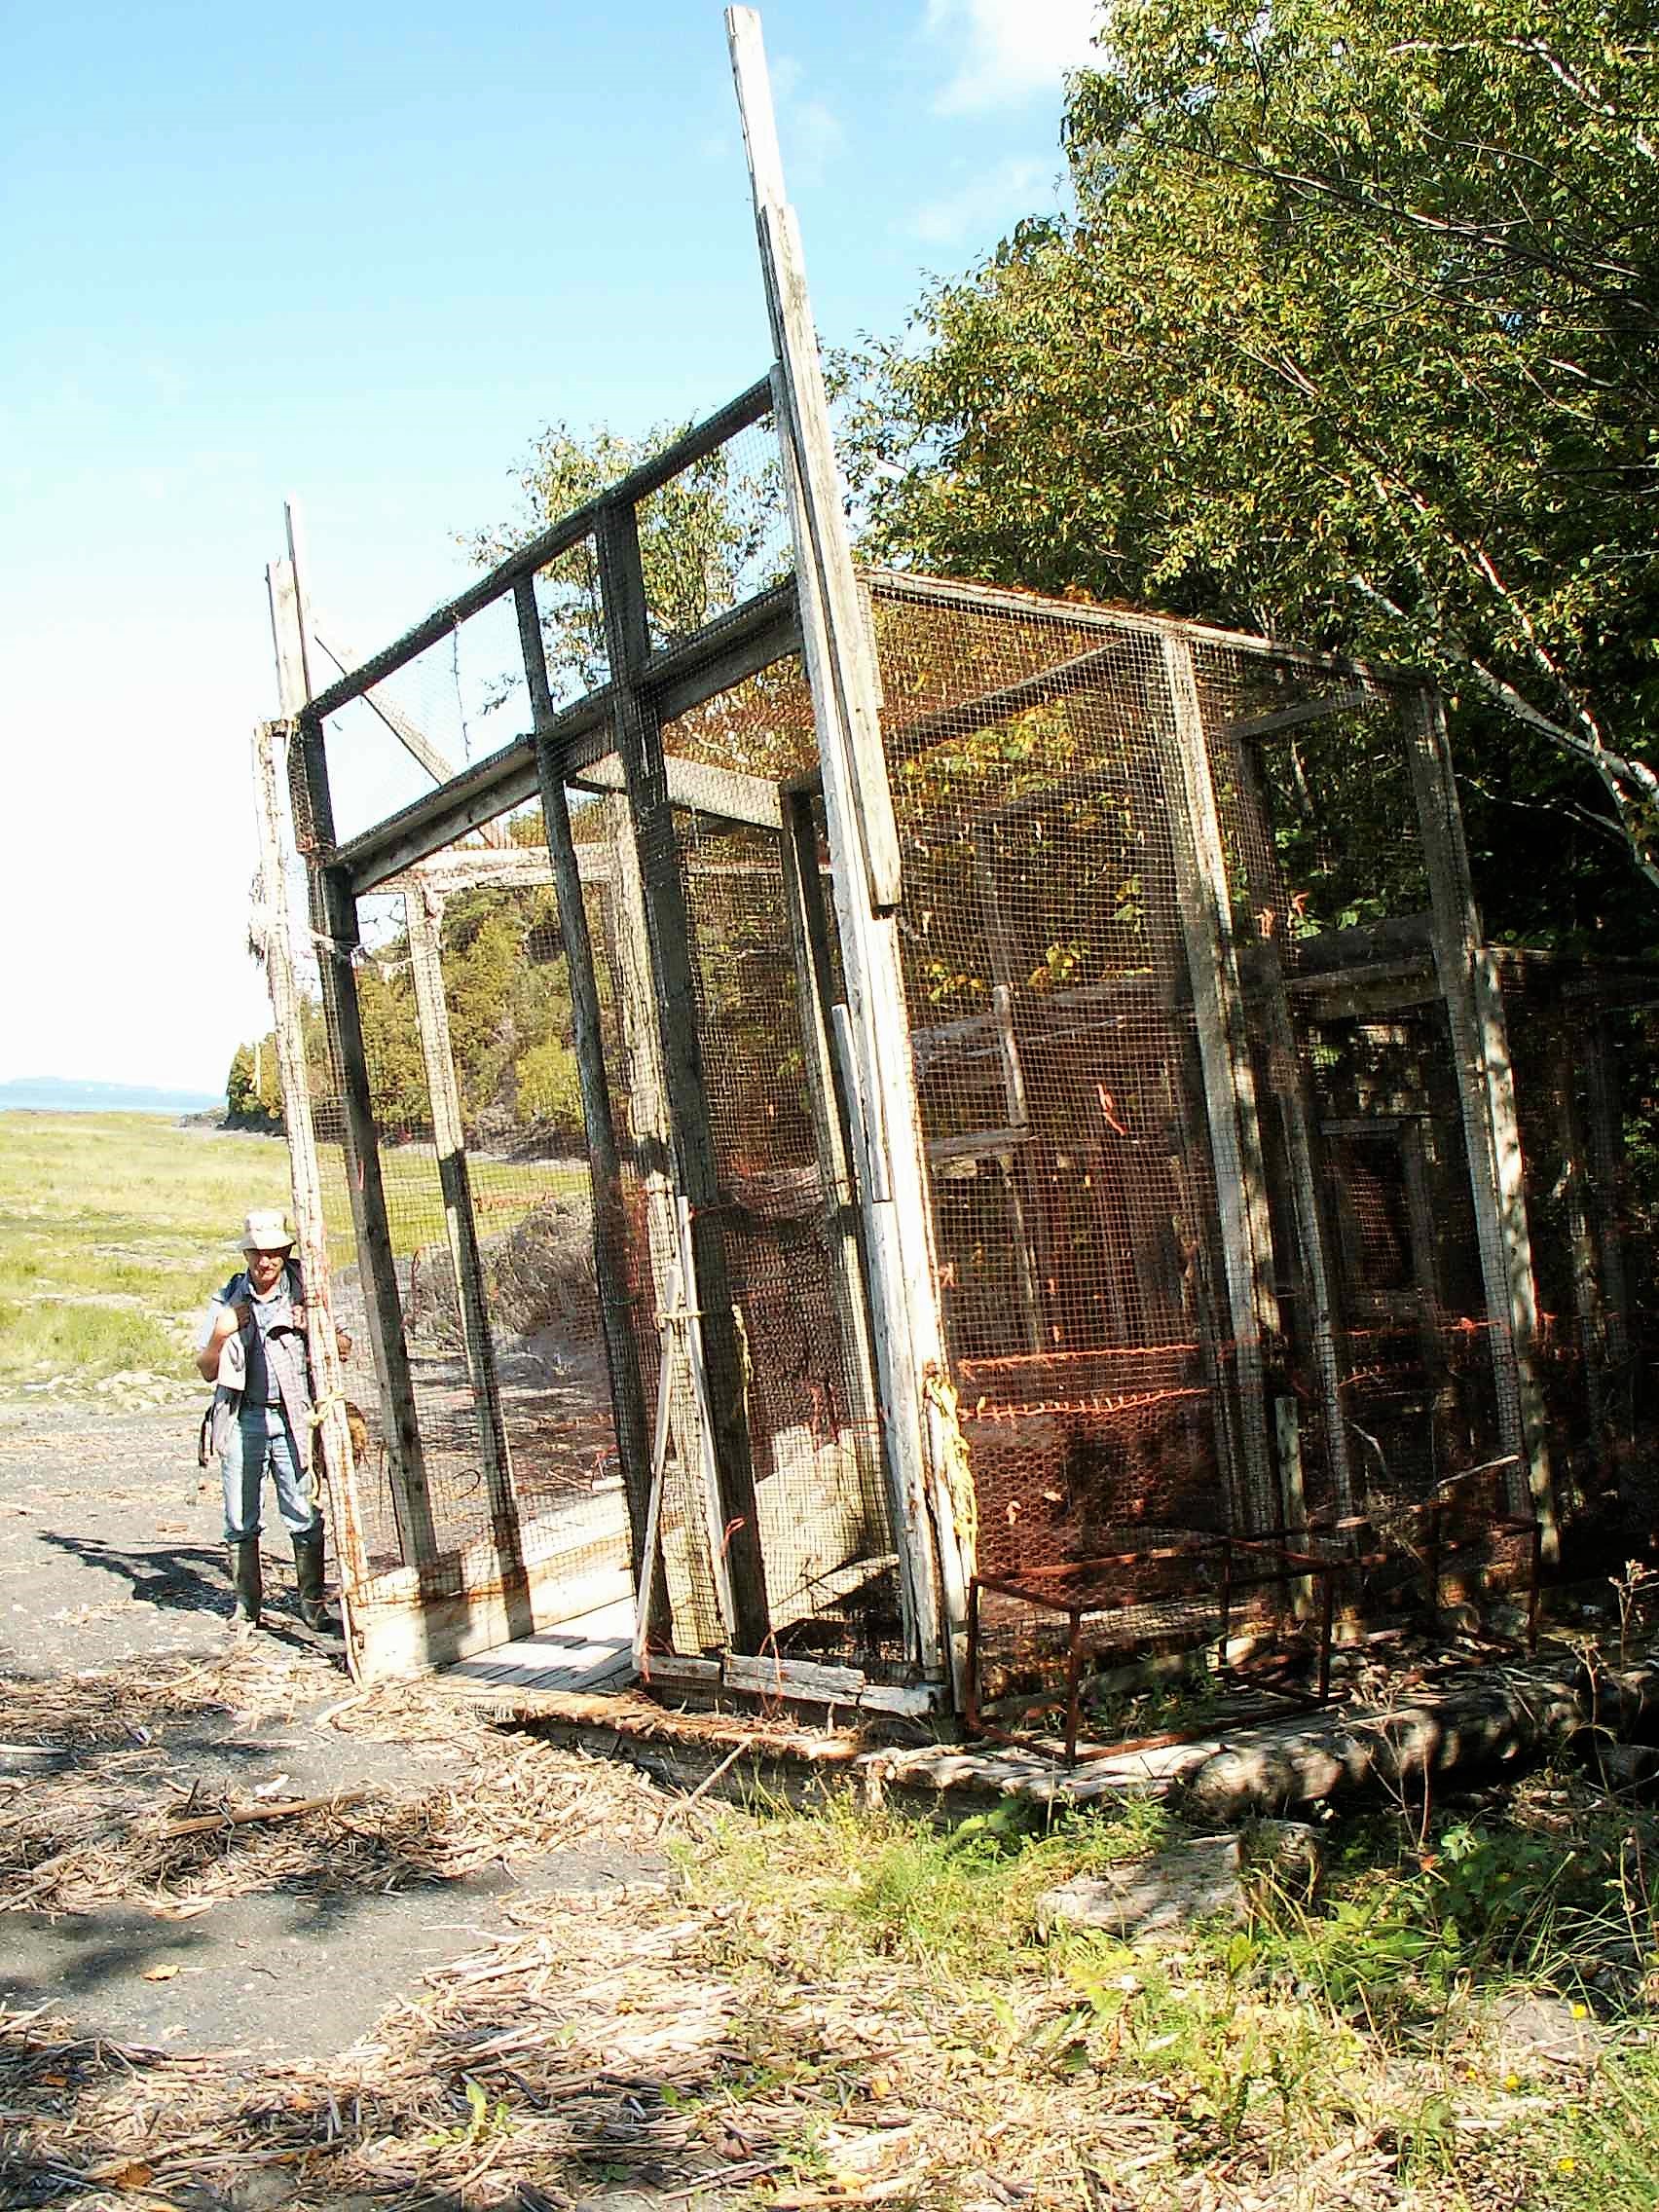 Cage en treillis métallique dont la structure est de planches. Elle mesure environ 6 mètres par 5 mètres et est échouée dans une baie bordée d'arbres, un homme est debout à gauche, c'est l'été.